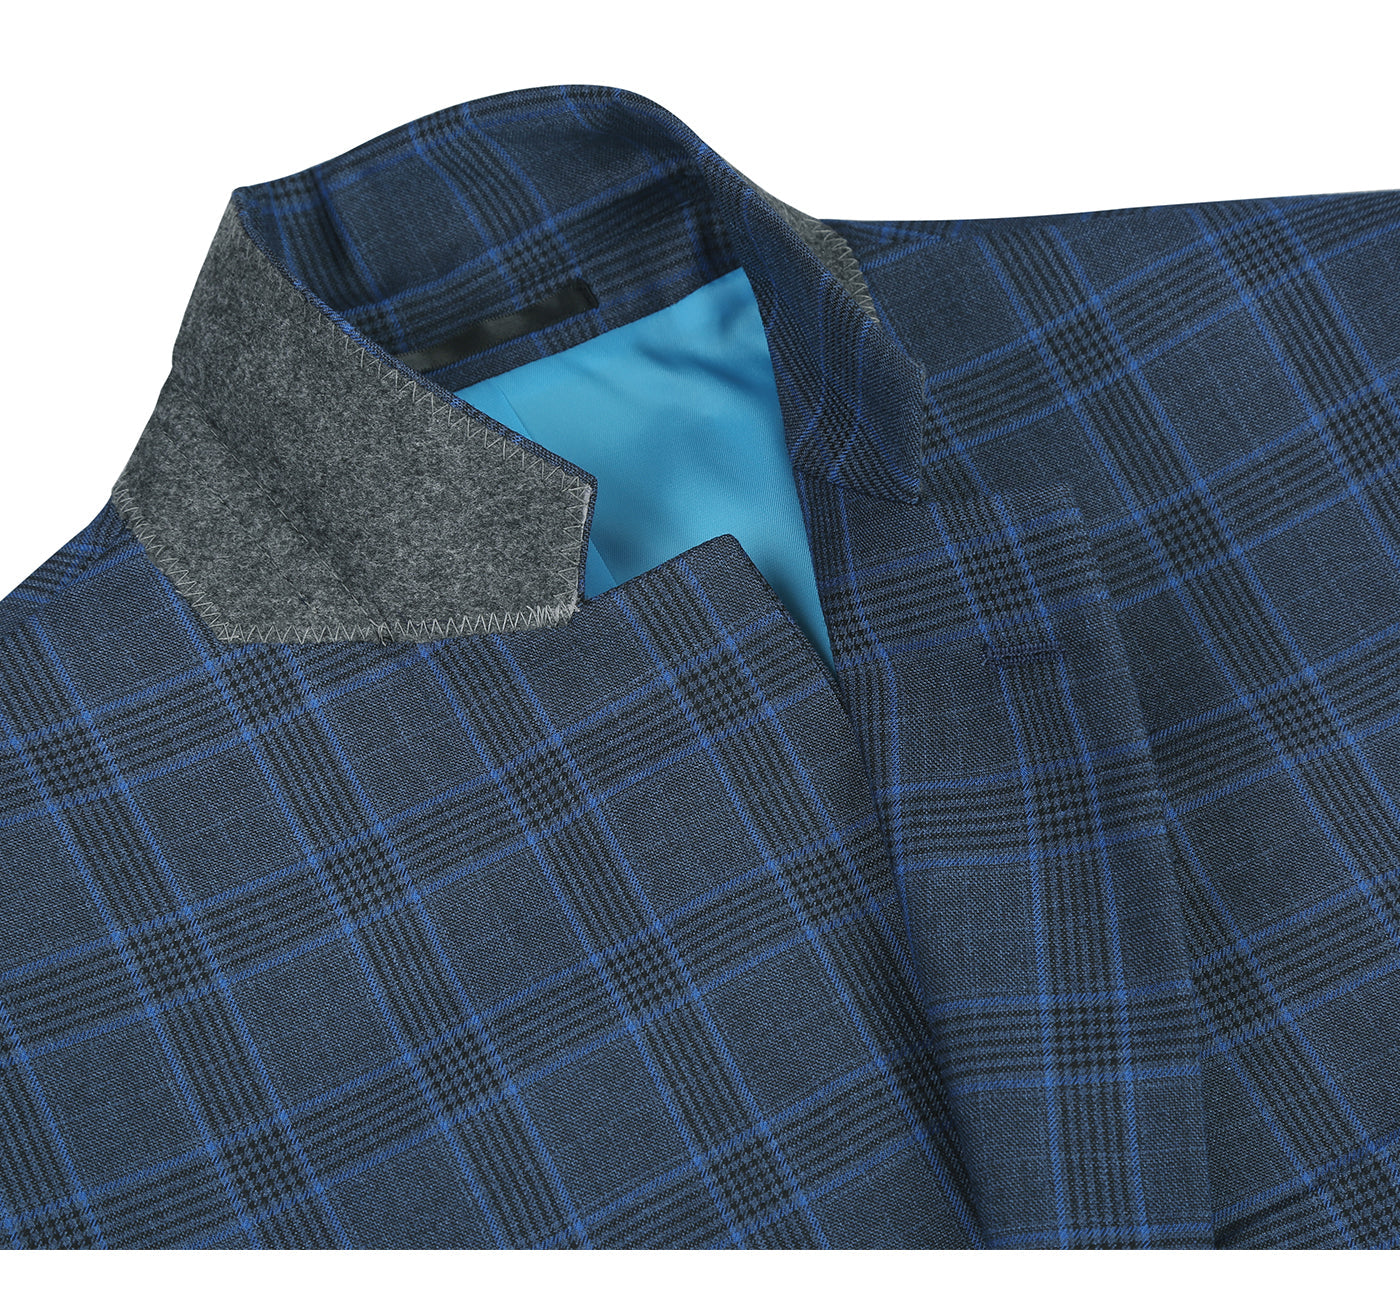 293-6 Men's Two Piece Classic Fit Grey/Blue/Black Windowpane Suit